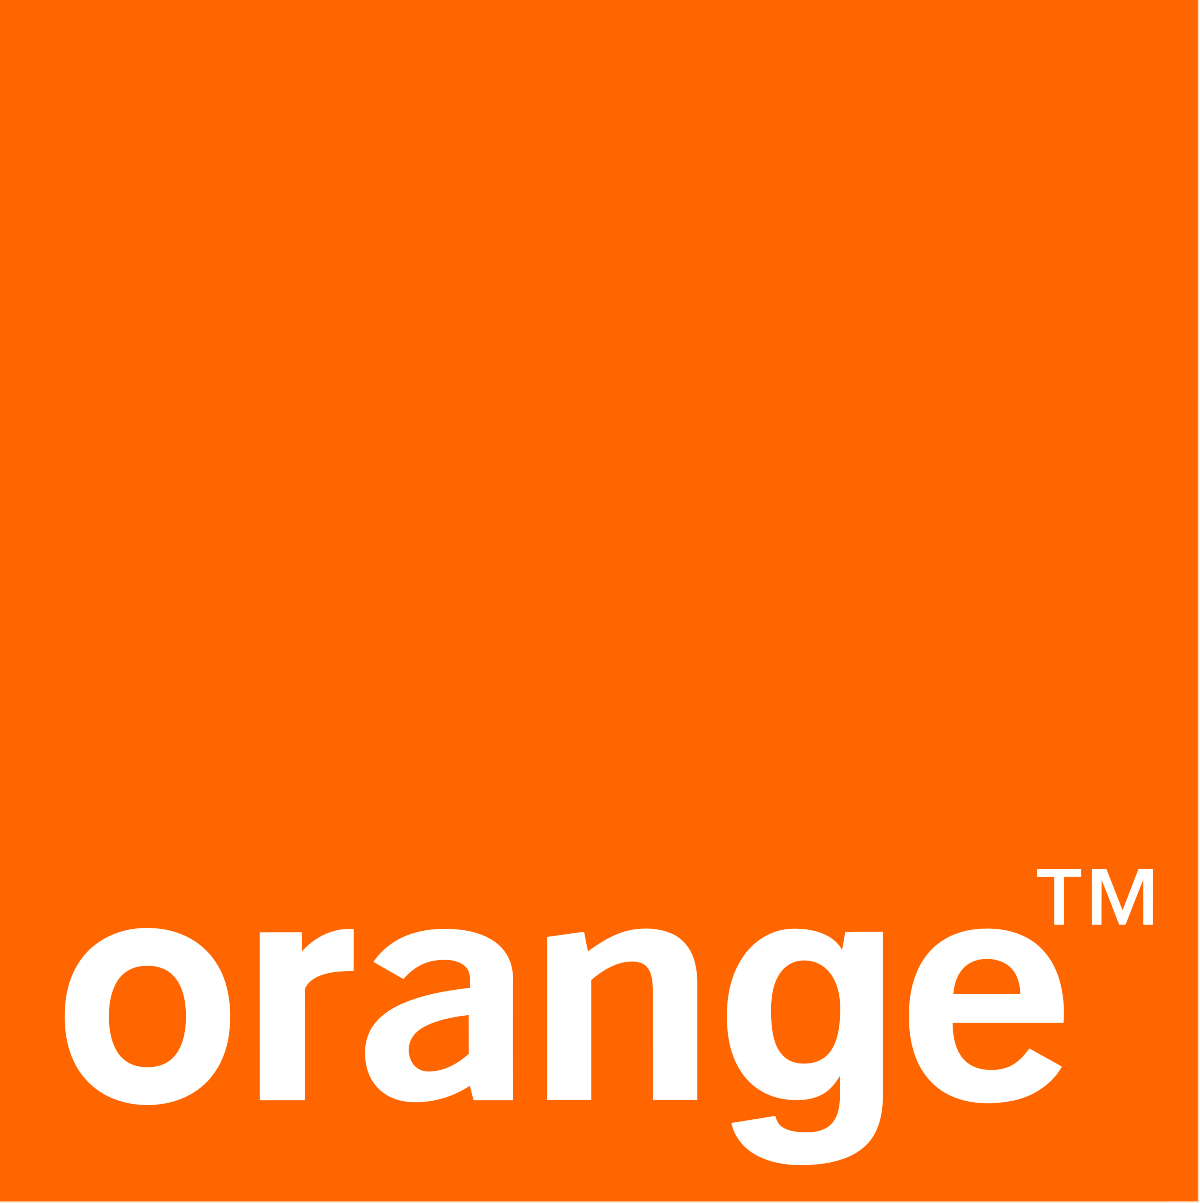 615d768d235c81e353c2efb5_1200px-Orange_logo.svg